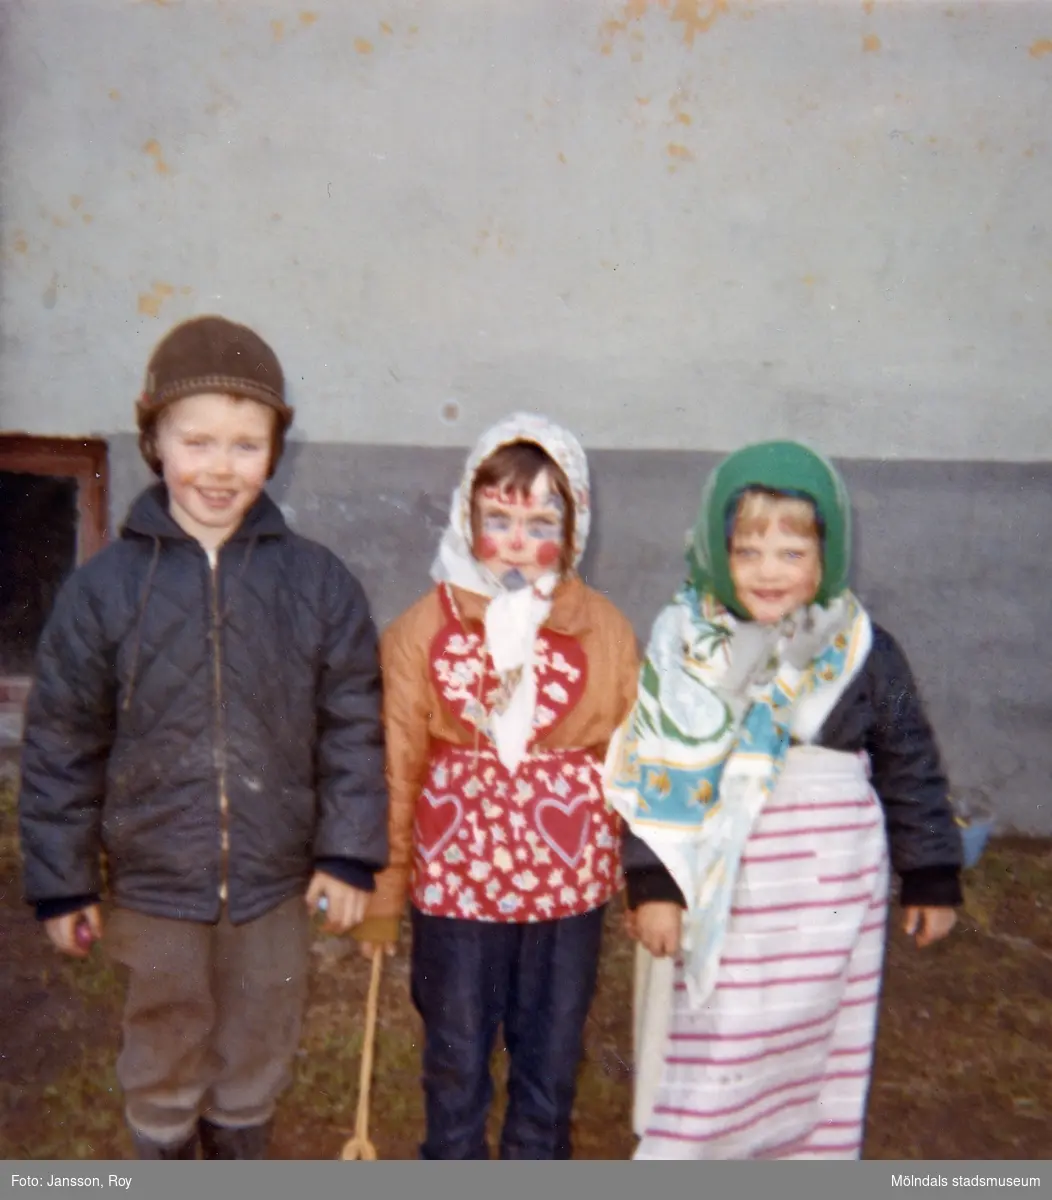 Tre påskklädda kompisar, Jörgen Larsson, Ilse Jansson och Åsa, står uppställda utefter en vägg år 1965. De bodde på Krokslättsgatan 3 i Mölndal.